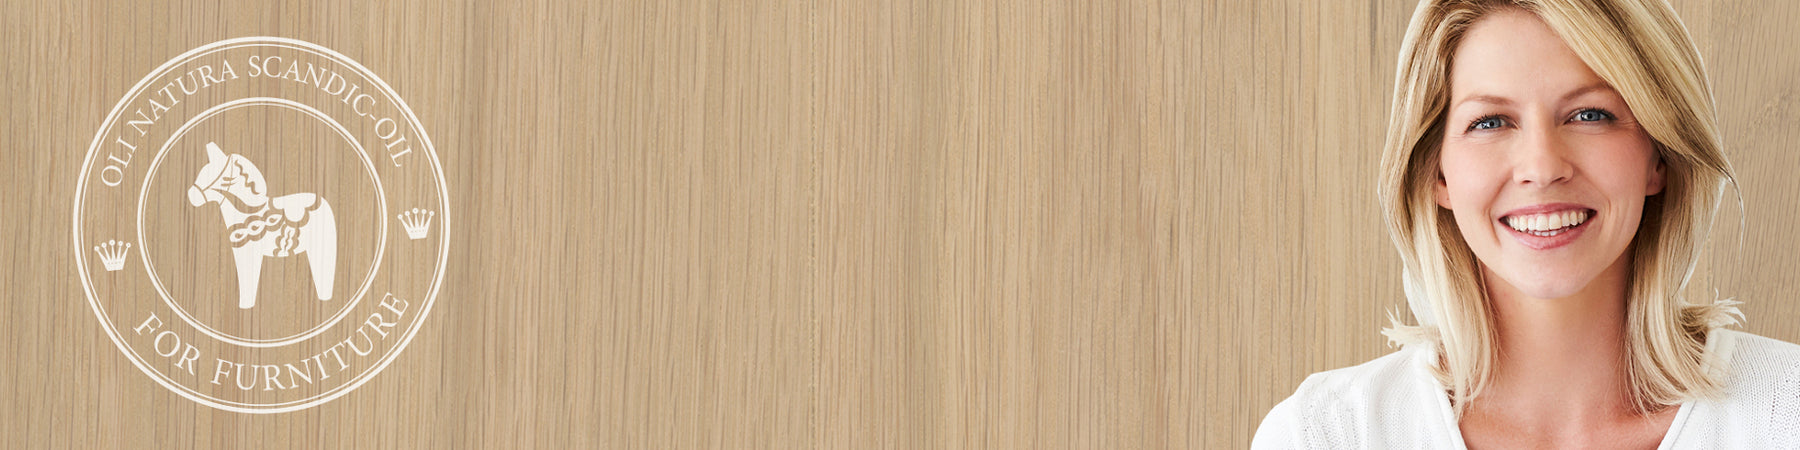 Skandinavische Möbel lieben helles Holz.  Für den natürlichen Schutz sorgt das beliebte OLI-NATURA Scandic-Oil »For Furniture«. Es bringt den angesagten Rohholteffekt auf den Stuhl, Tisch oder die Treppe und ist VOC-frei, umweltfreundlich und wohngesund. 